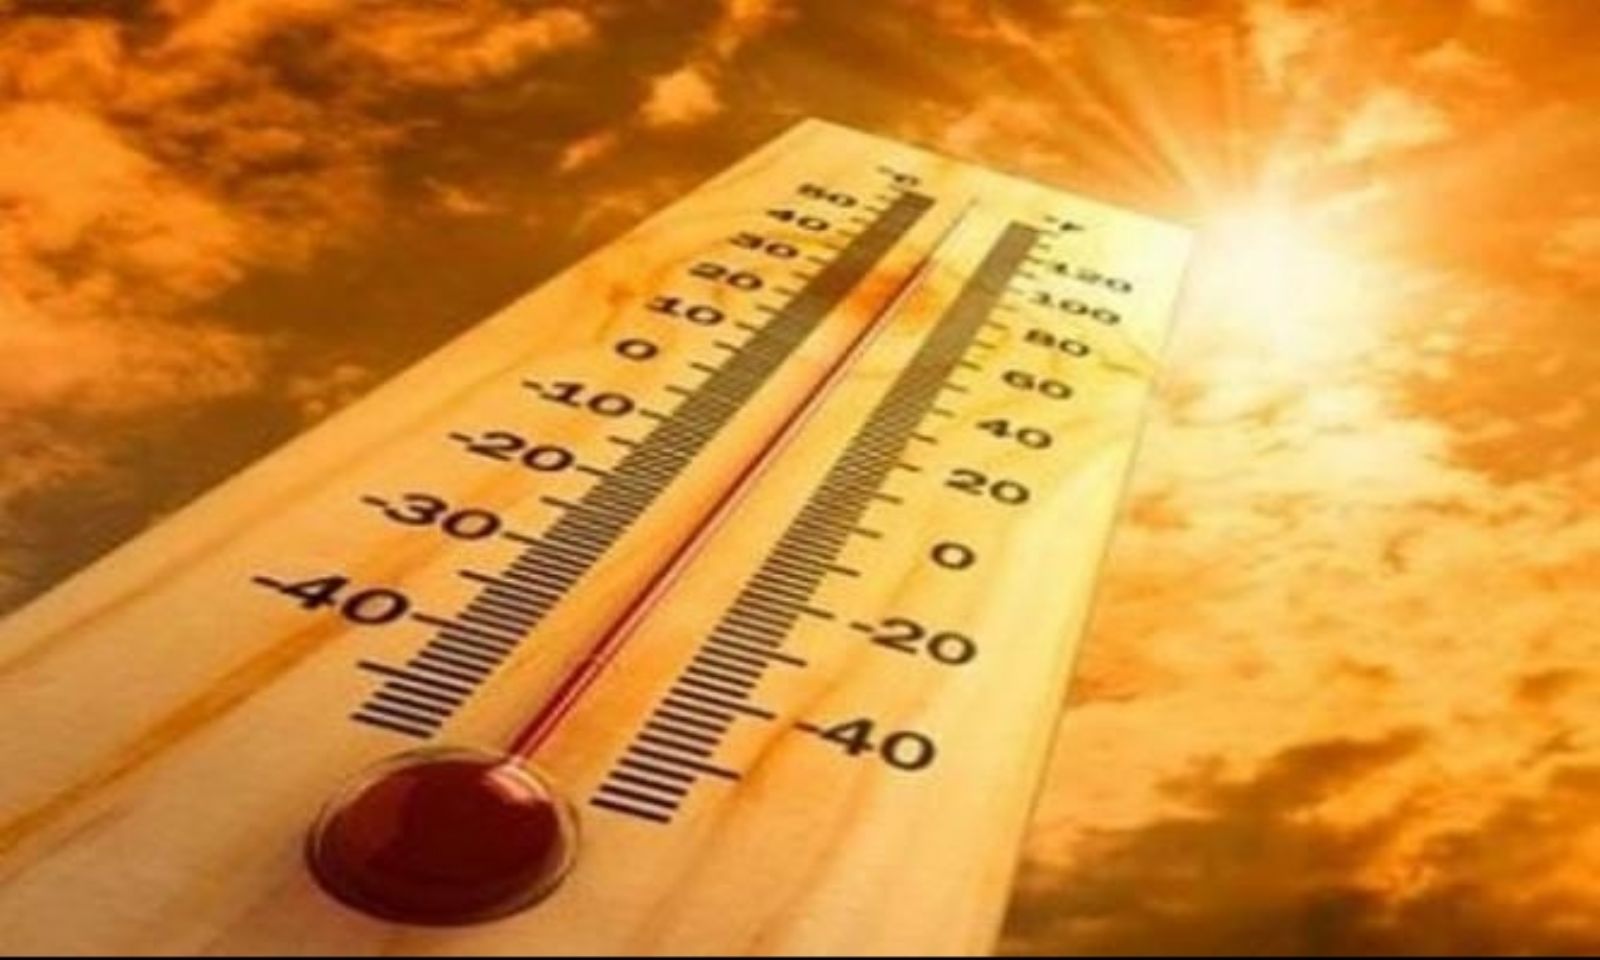 درجة الحرارة قياس الجو جهاز مقياس الحرارة